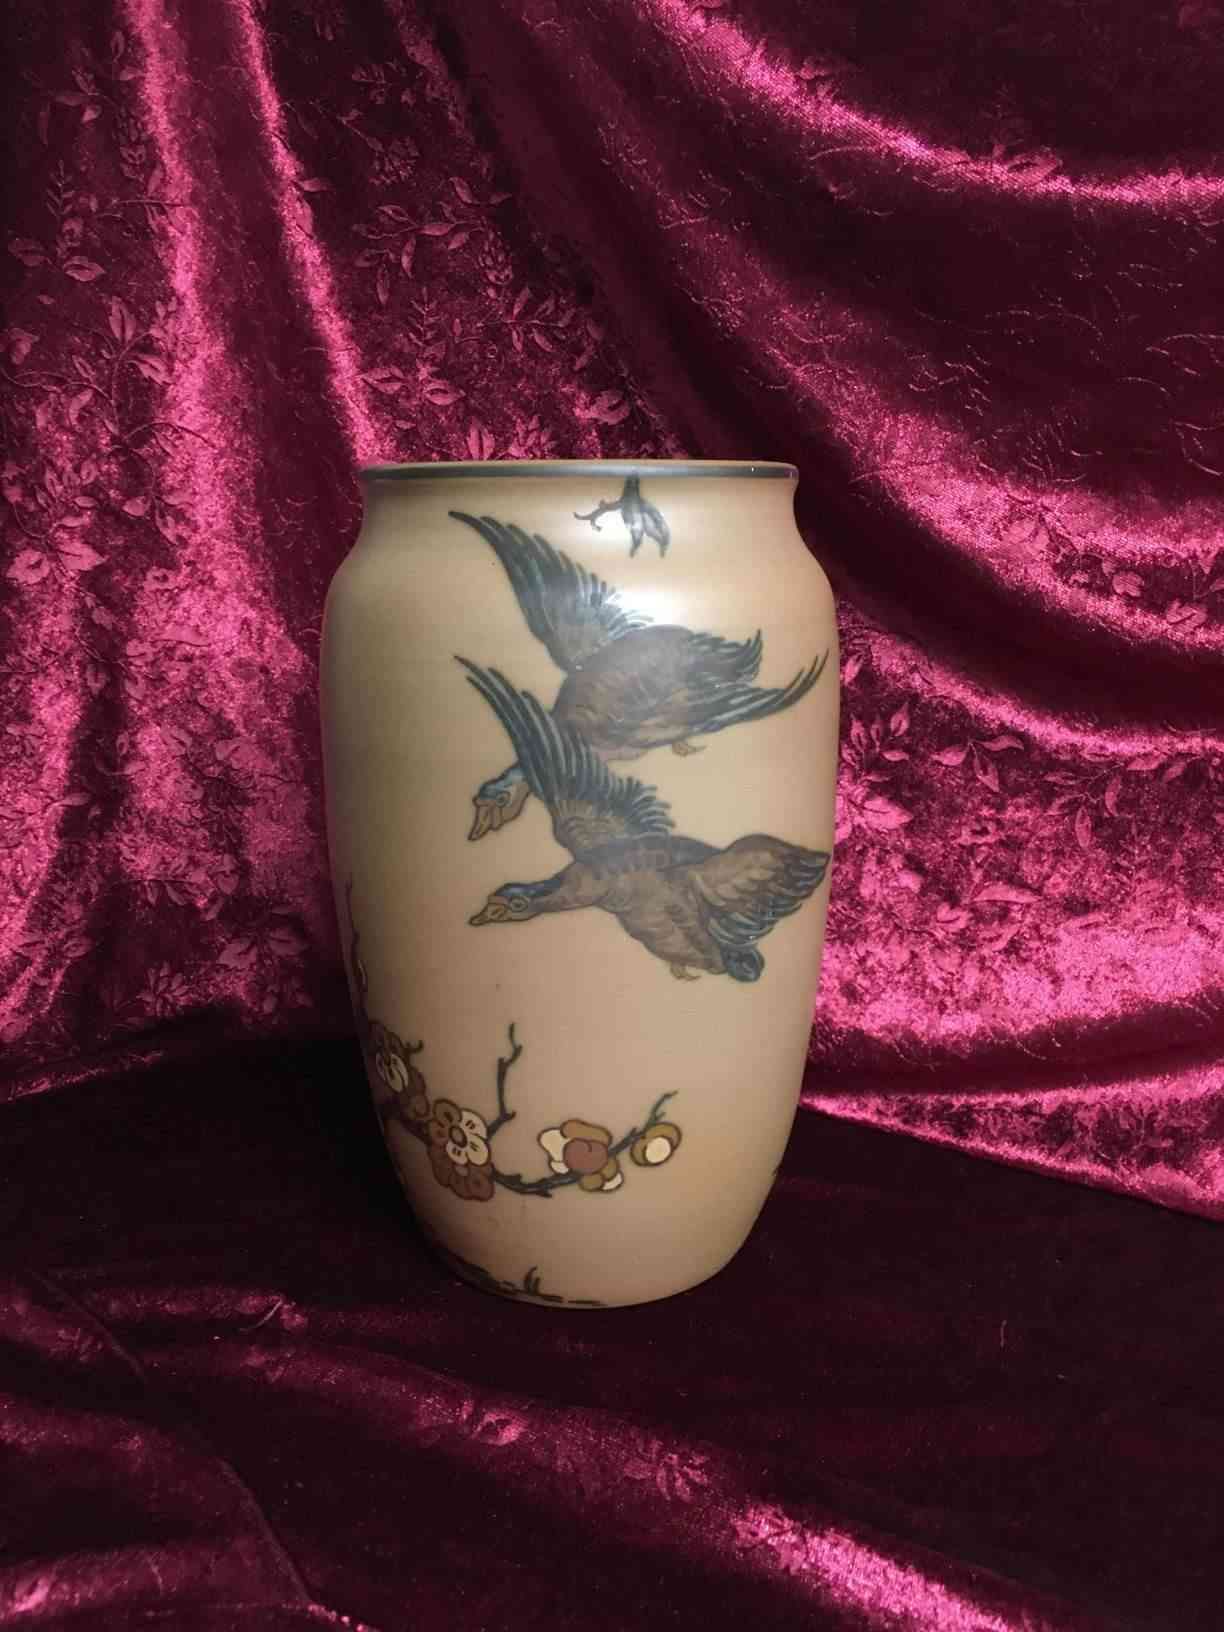 Hjorth - Vase 25 cm høj dekoreret med fugle, i perfekt stand. Produceret i 1920'erne og udtænkt af Johanne Hjorth (f. Tvede Bruhn 1879-1955). Dekorationerne er af Thora Hjorth (1875-1970), som er uddannet på malerskoler i København og på utallige studierejser, specielt til Tyskland. Pris: 800,- Kr.